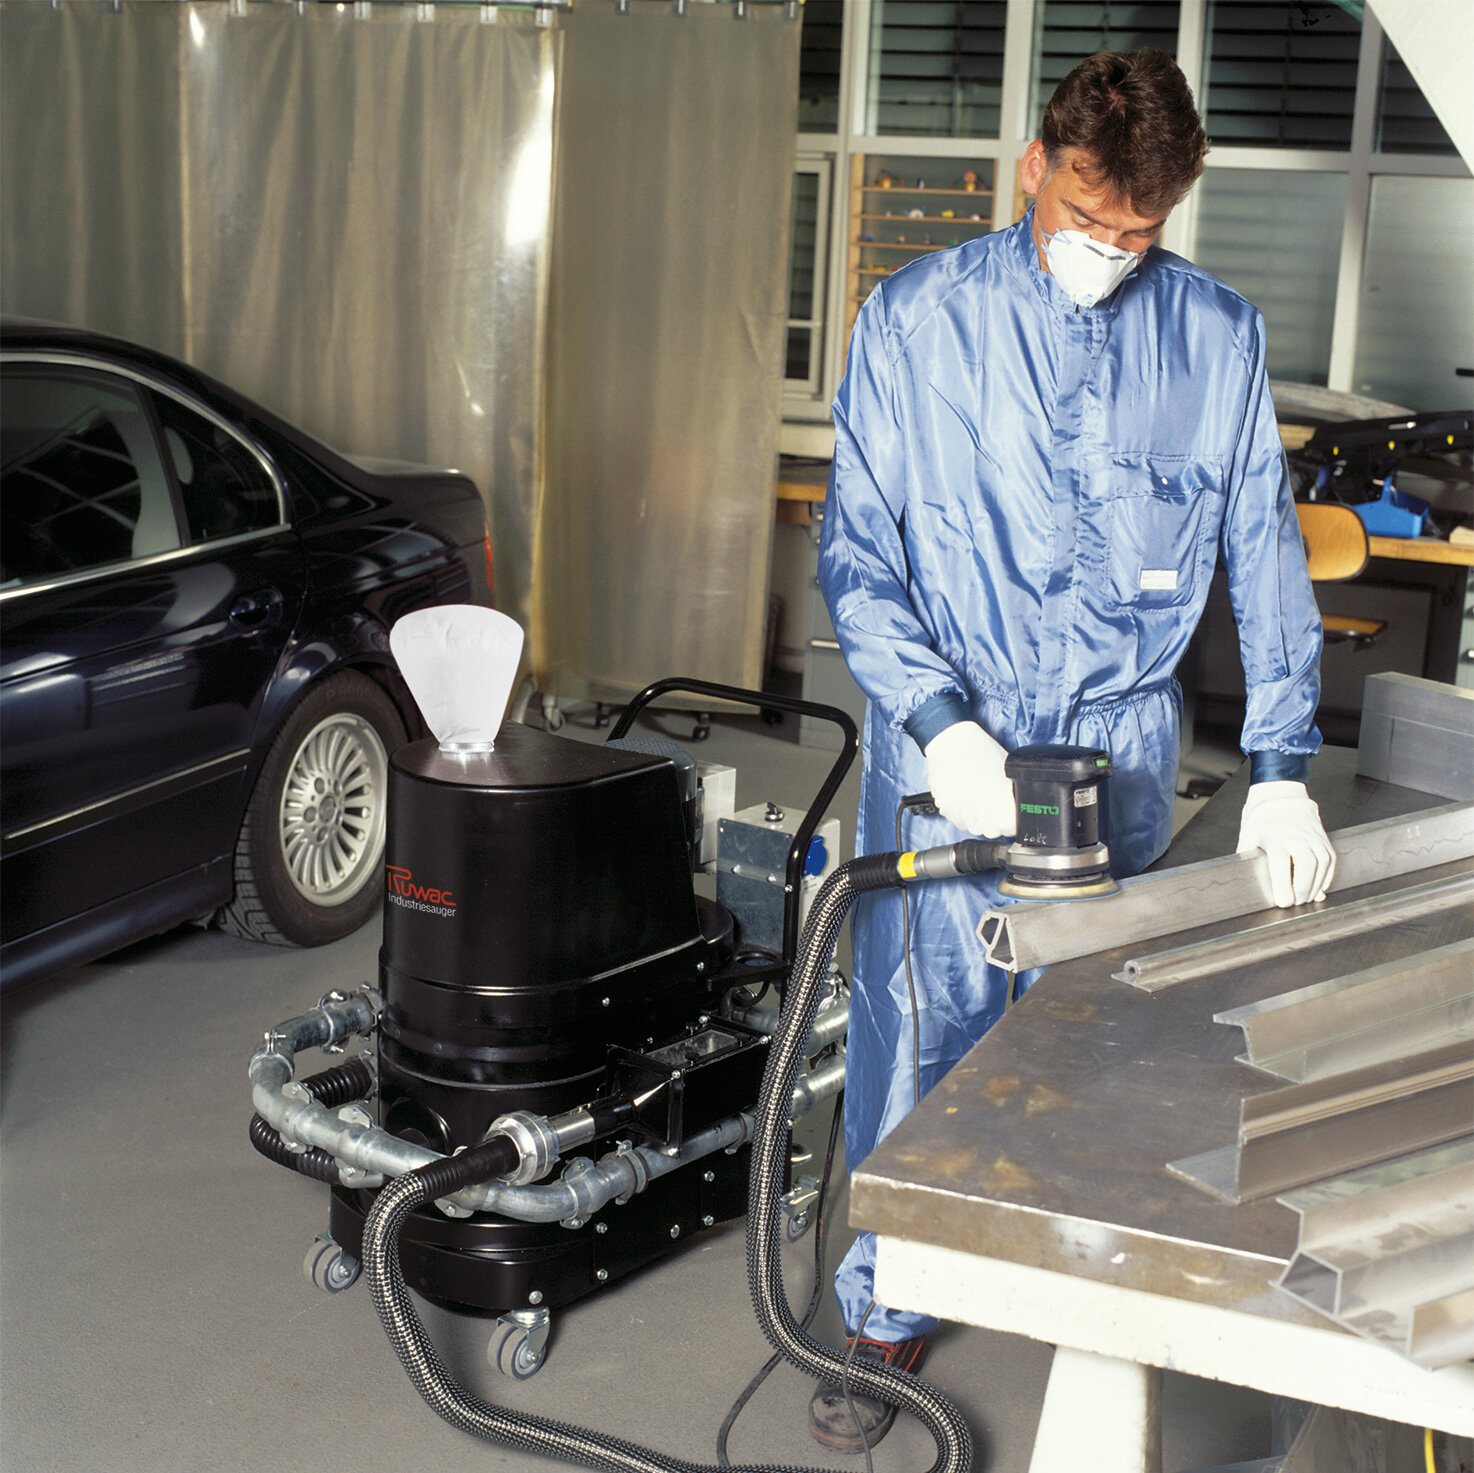 Odkurzacz przemysłowy Ruwac R01 R022 z iskrochronem, przeznaczony do pracy w atmosferze grożącej wybuchem pyłu, odsysa palne pyły aluminiowe w zakładach BMW w Monachium.